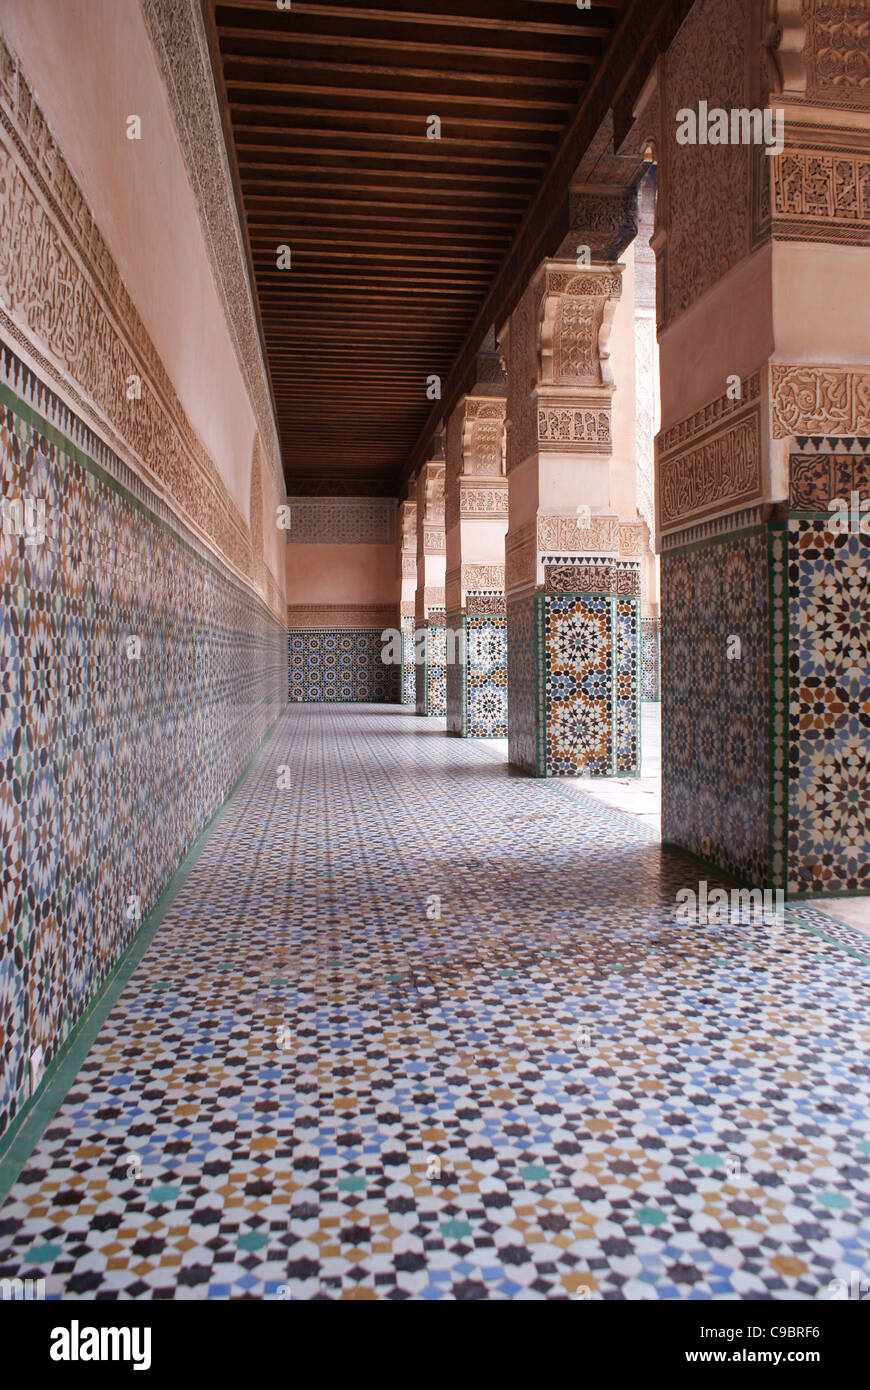 L'élaboration de carreaux dans la Madrasa Ben Youssef, Marrakech, Maroc Banque D'Images